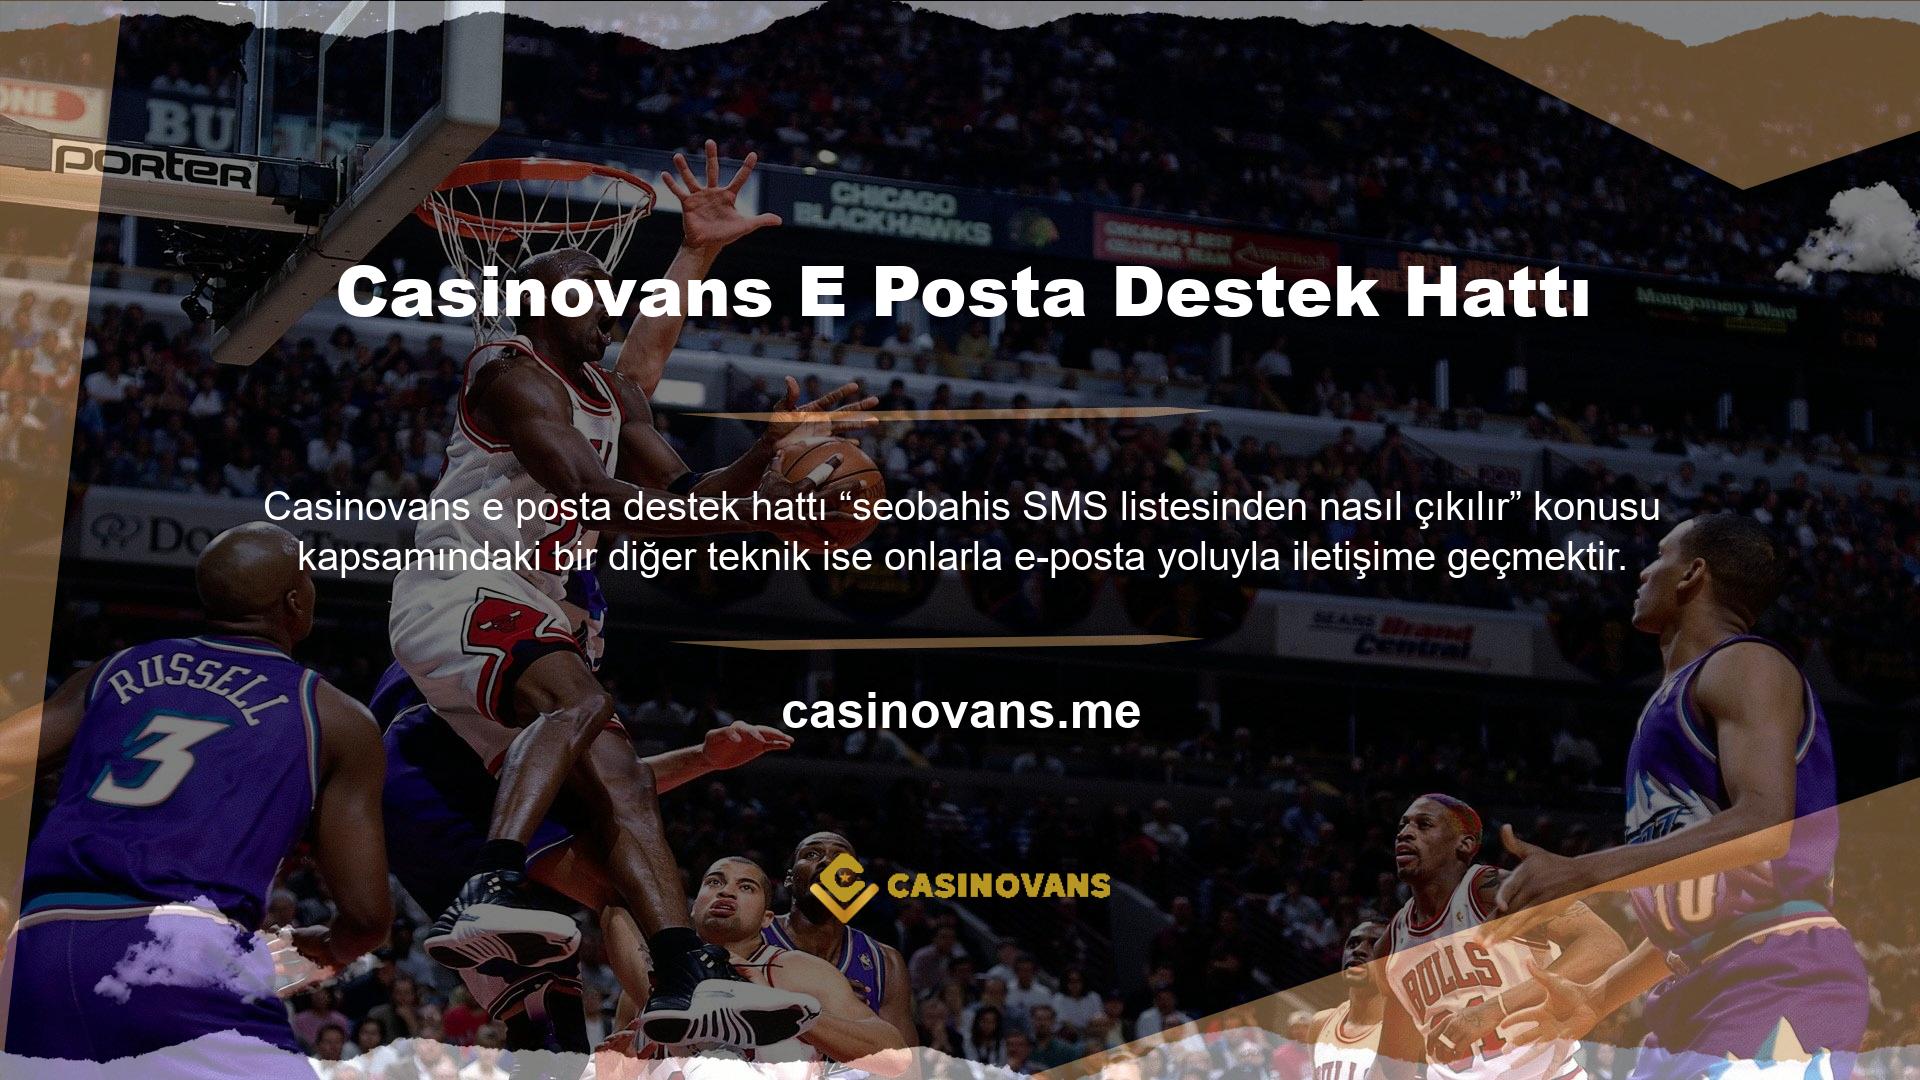 @Casinovans